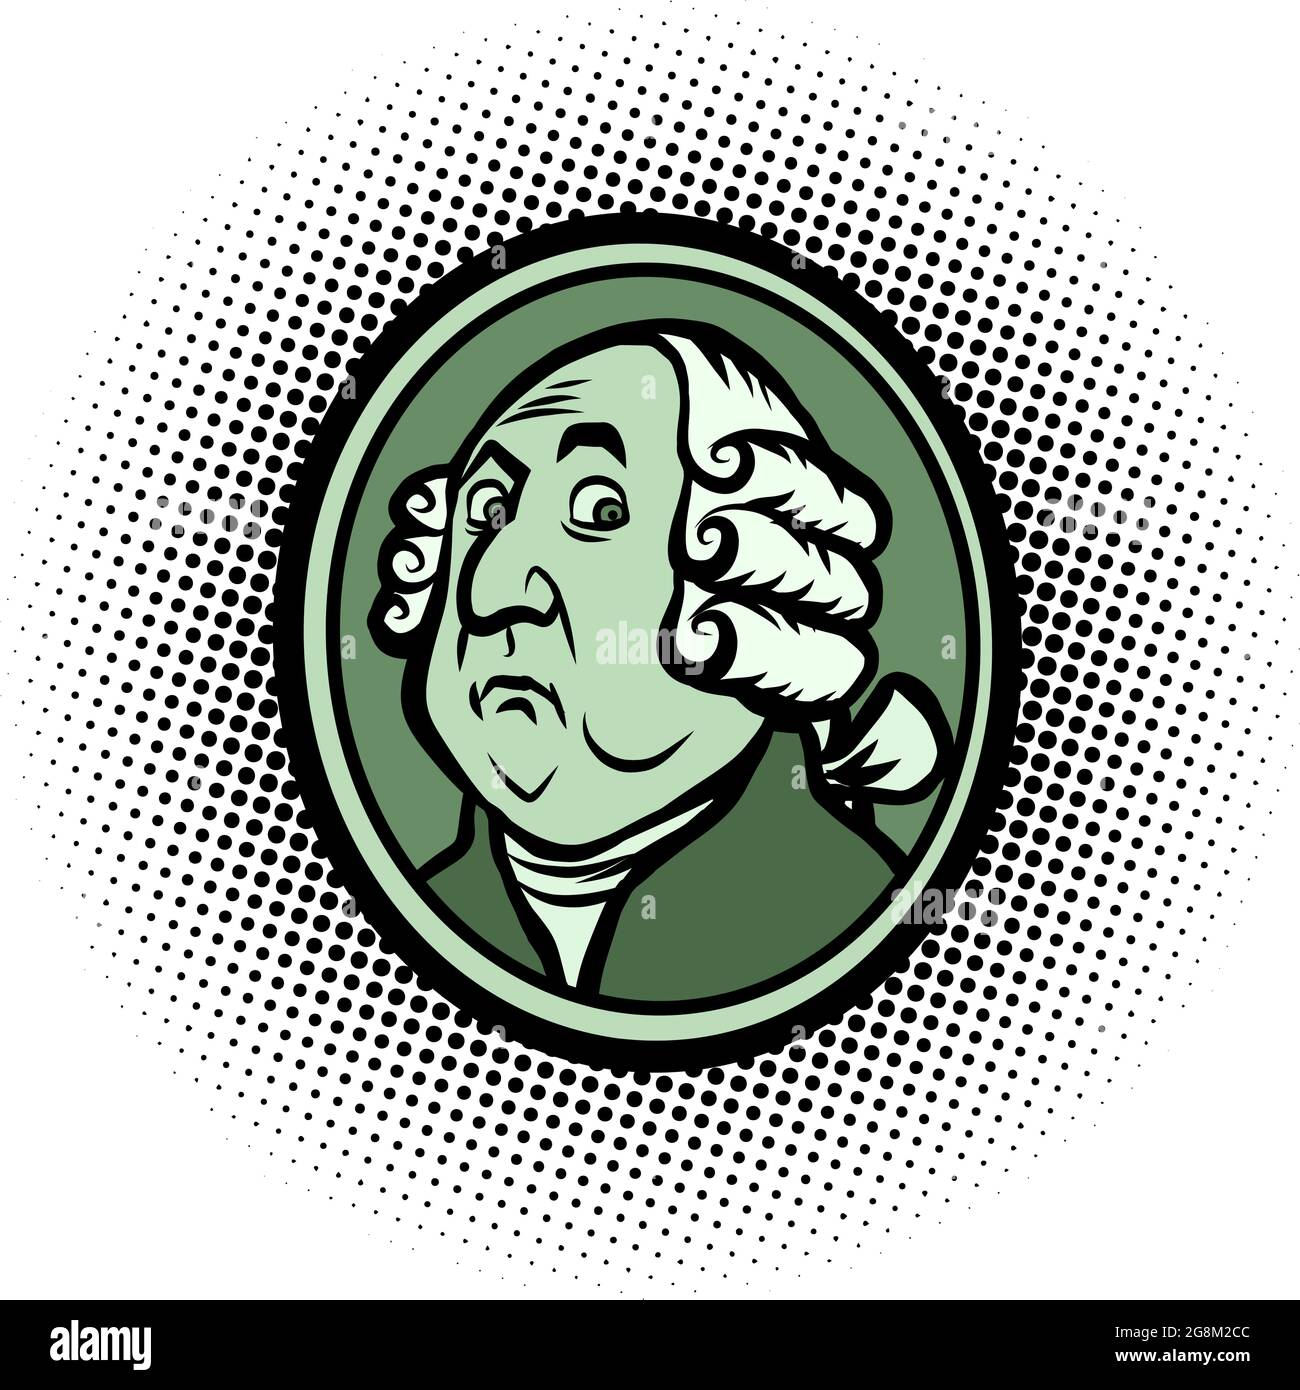 George Washington Président américain, portrait de profil dans une perruque. Célèbre personnage historique Illustration de Vecteur